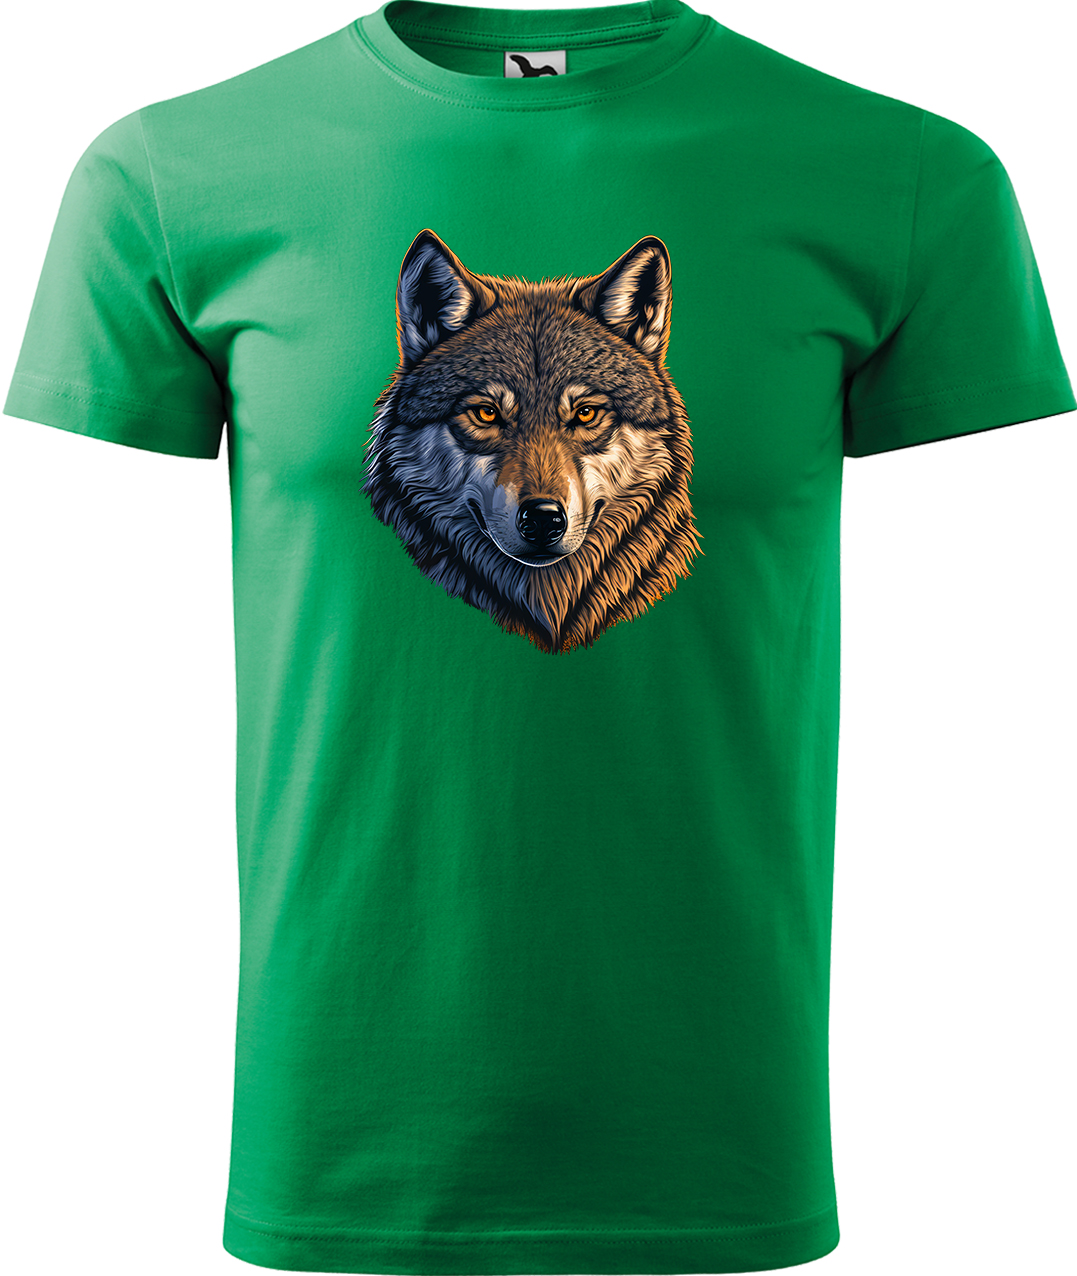 Pánské tričko s vlkem - Hlava vlka Velikost: L, Barva: Středně zelená (16), Střih: pánský